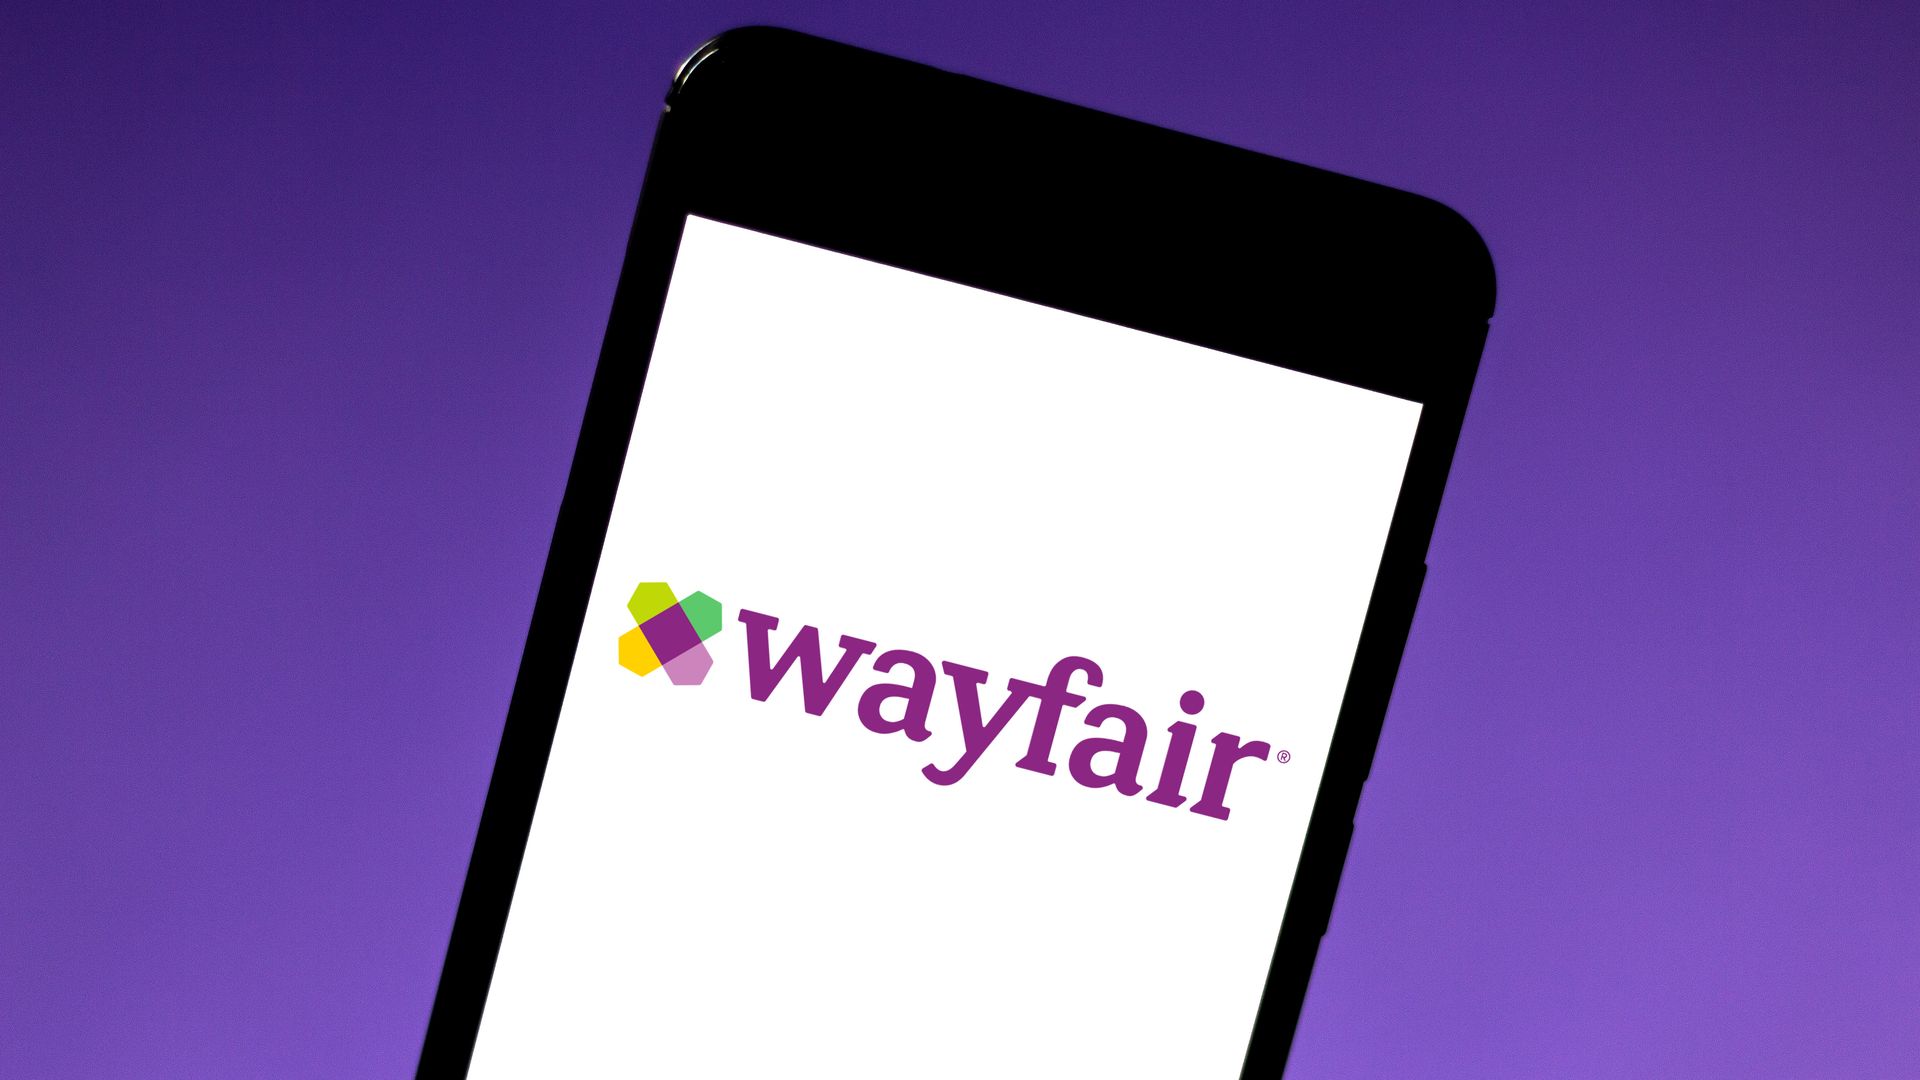 the wayfair logo on a phone